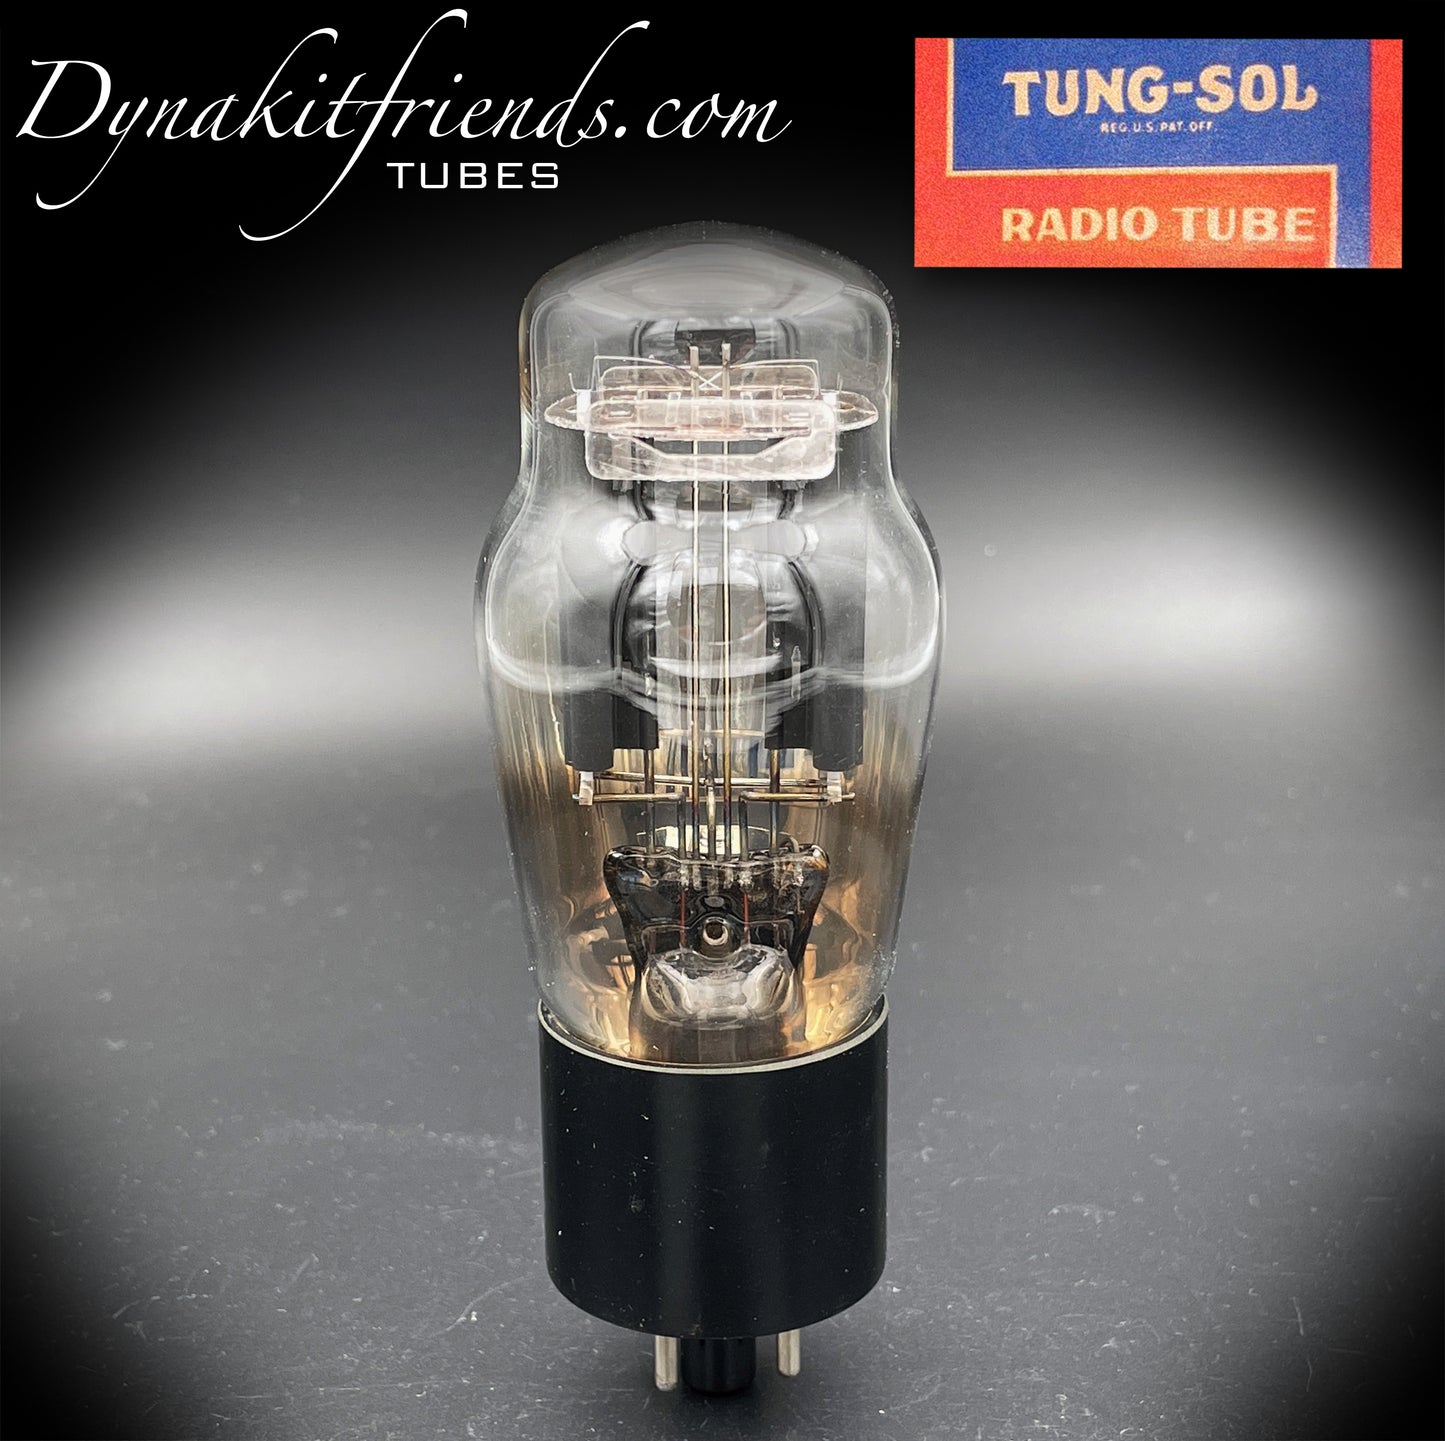 5Y3G (5Z2P) TUNG-SOL NOS hängende Filamente, schwarze gerippte Platten, Folien-Getterrohr-Gleichrichter, hergestellt in den USA